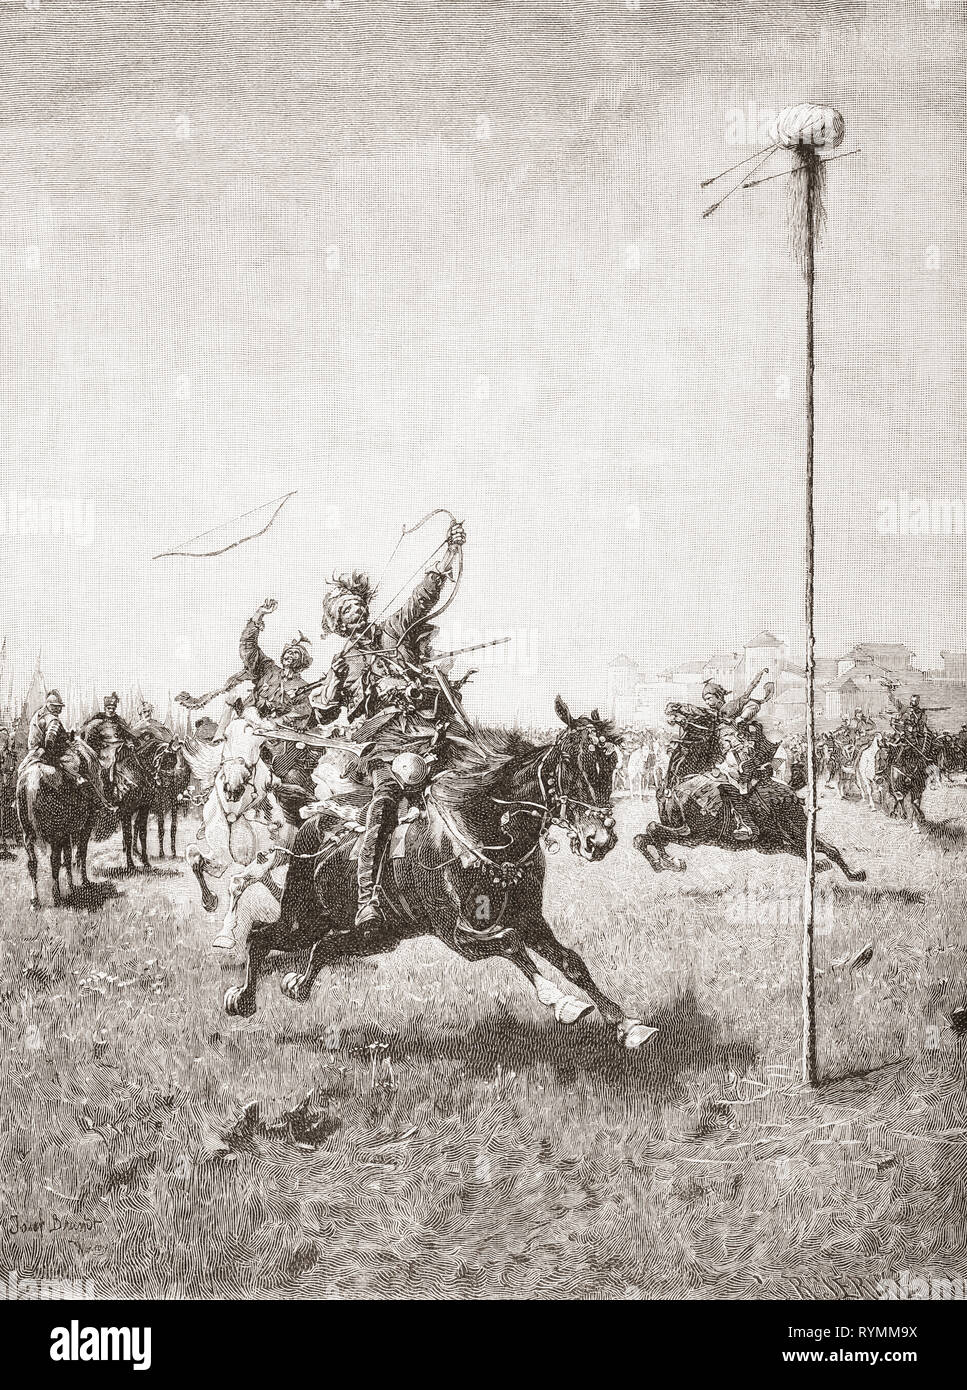 Lisowczycy Soldaten in einem Bogenschießen Wettbewerb, nach dem Gemälde von Josef von Brandt. Die Lisowczycy waren ein Anfang des 17. Jahrhunderts irreguläre Einheit des polnisch-litauischen leichte Kavallerie. Von Ilustracion Artistica, veröffentlicht 1887. Stockfoto